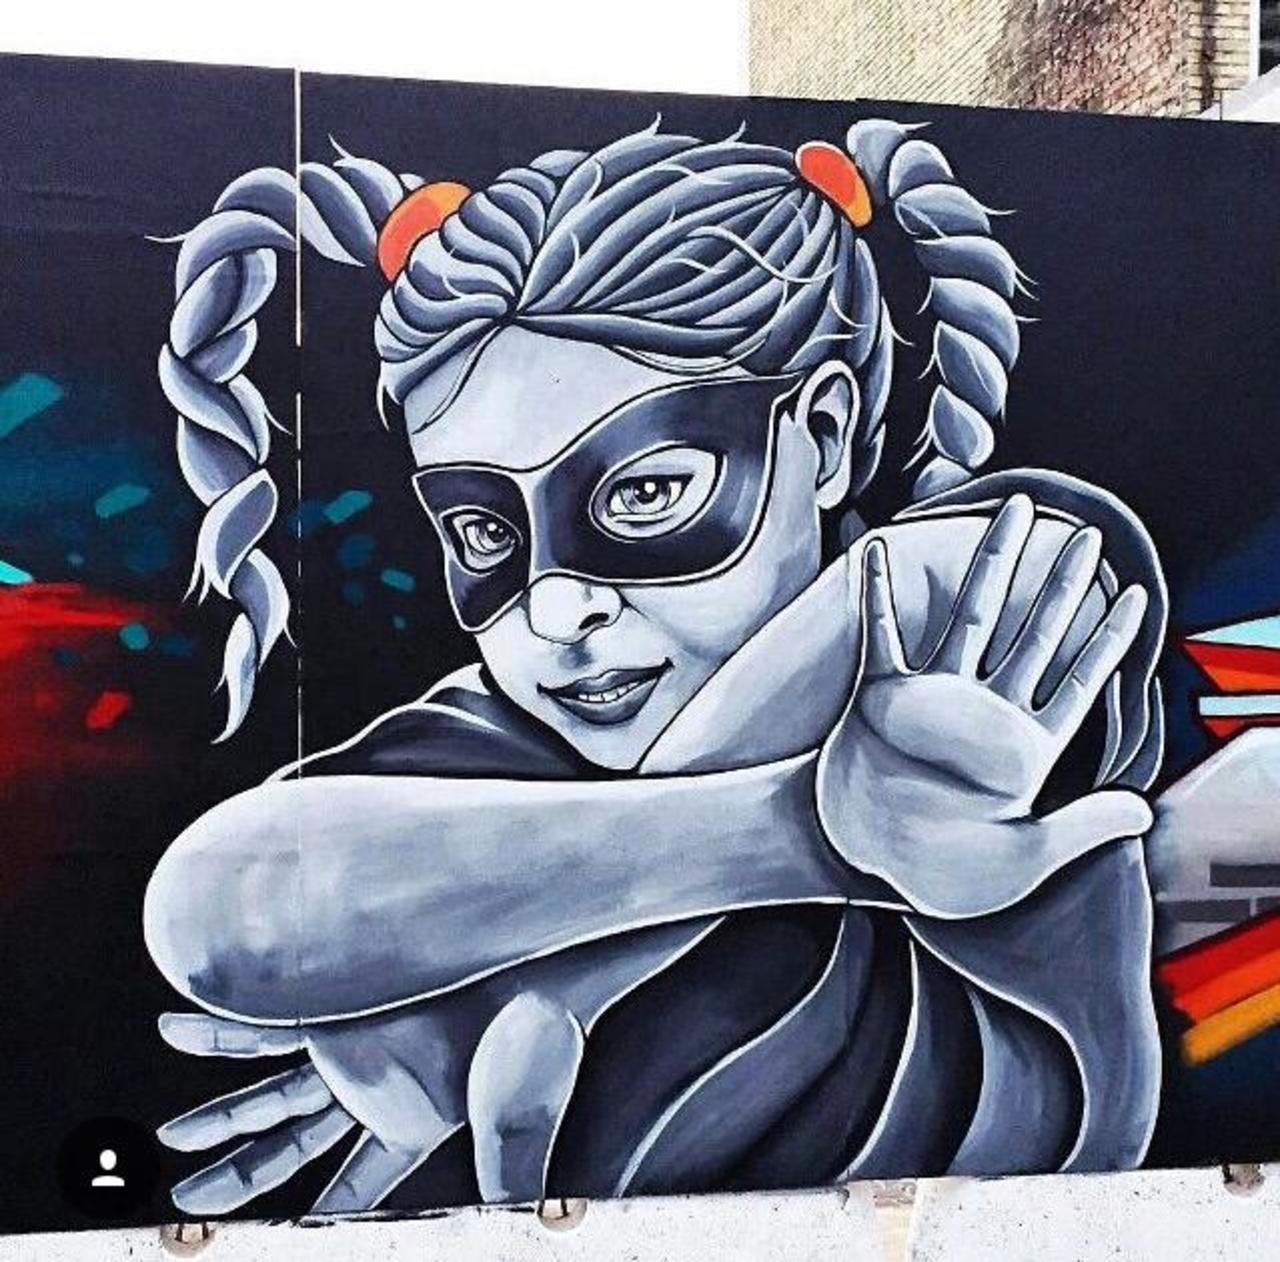 RT GoogleStreetArt: Street Art by Stinehvid 

#art #graffiti #mural #streetart http://t.co/d6ZKsma5Z9 https://goo.gl/7kifqw